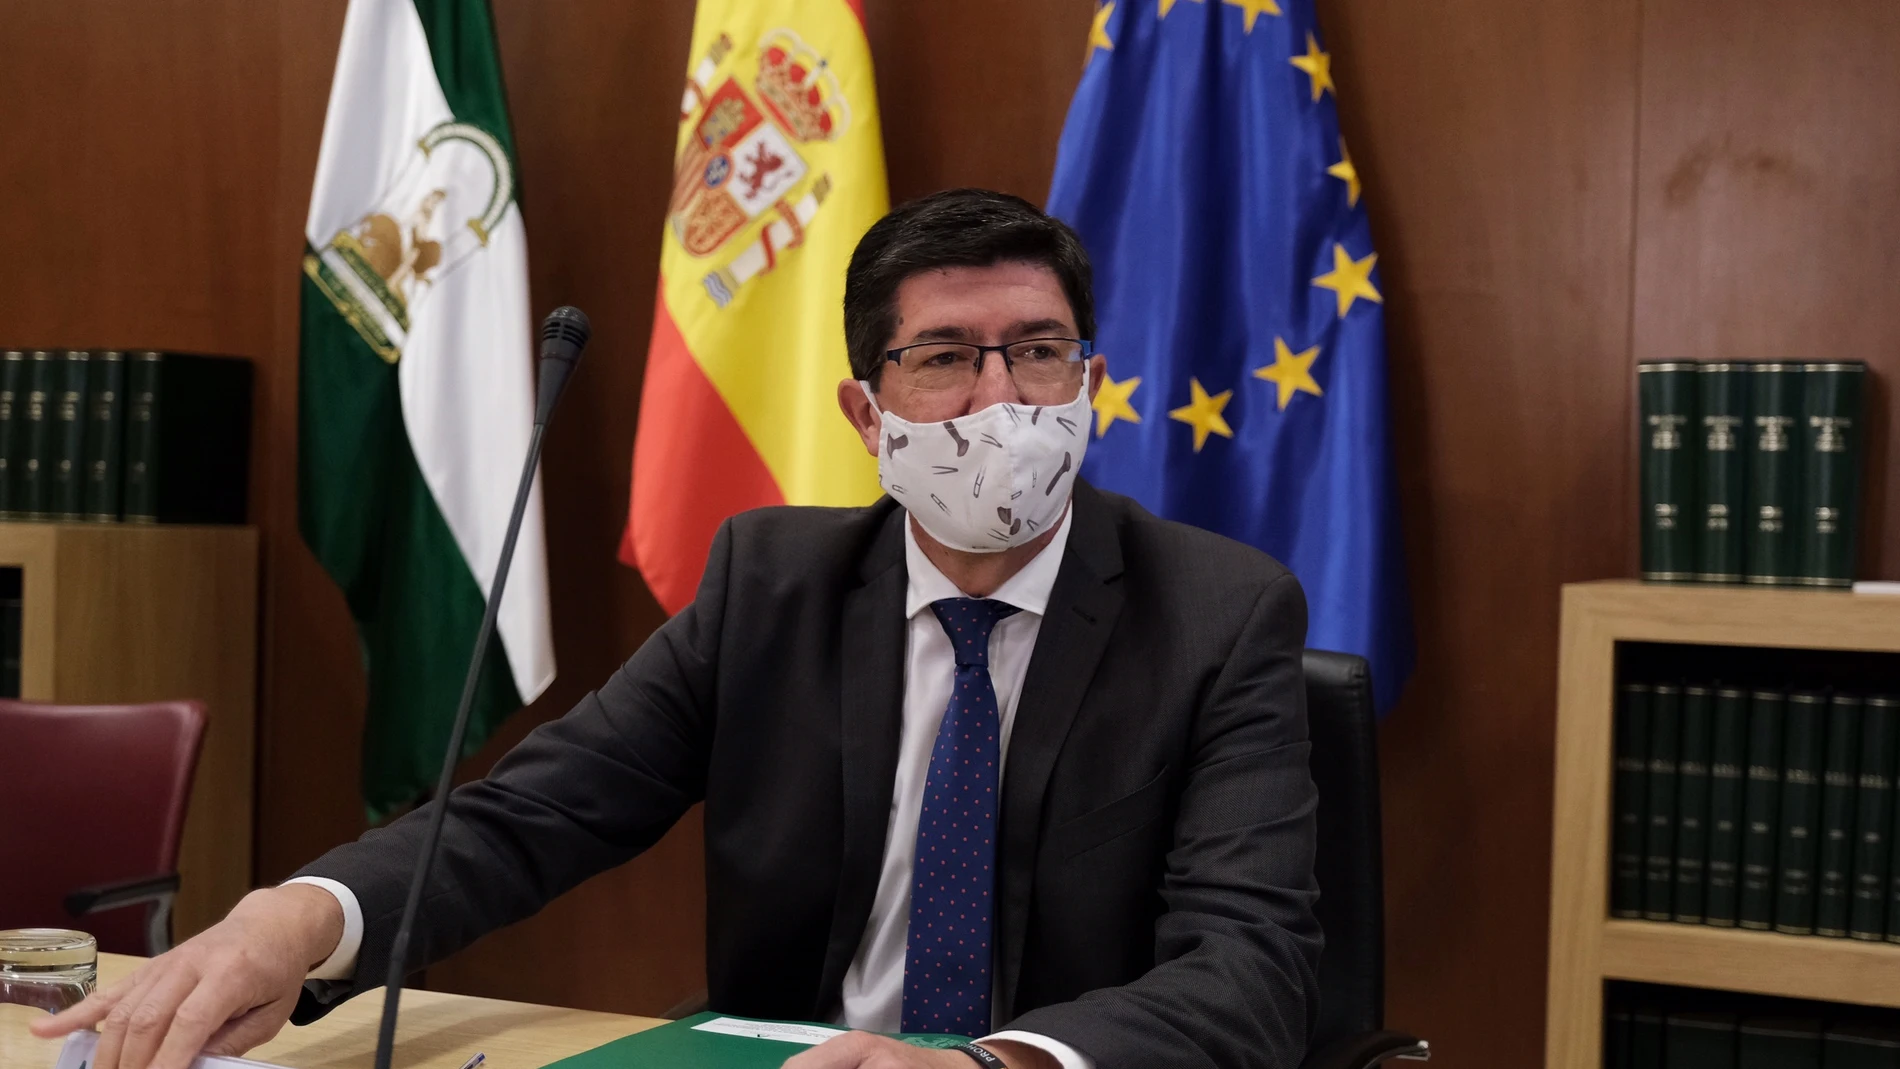 Coronavirus.- Marín no ve "ninguna situación alarmante" ahora en Andalucía: "Si la hubiera, la diríamos" desde la Junta